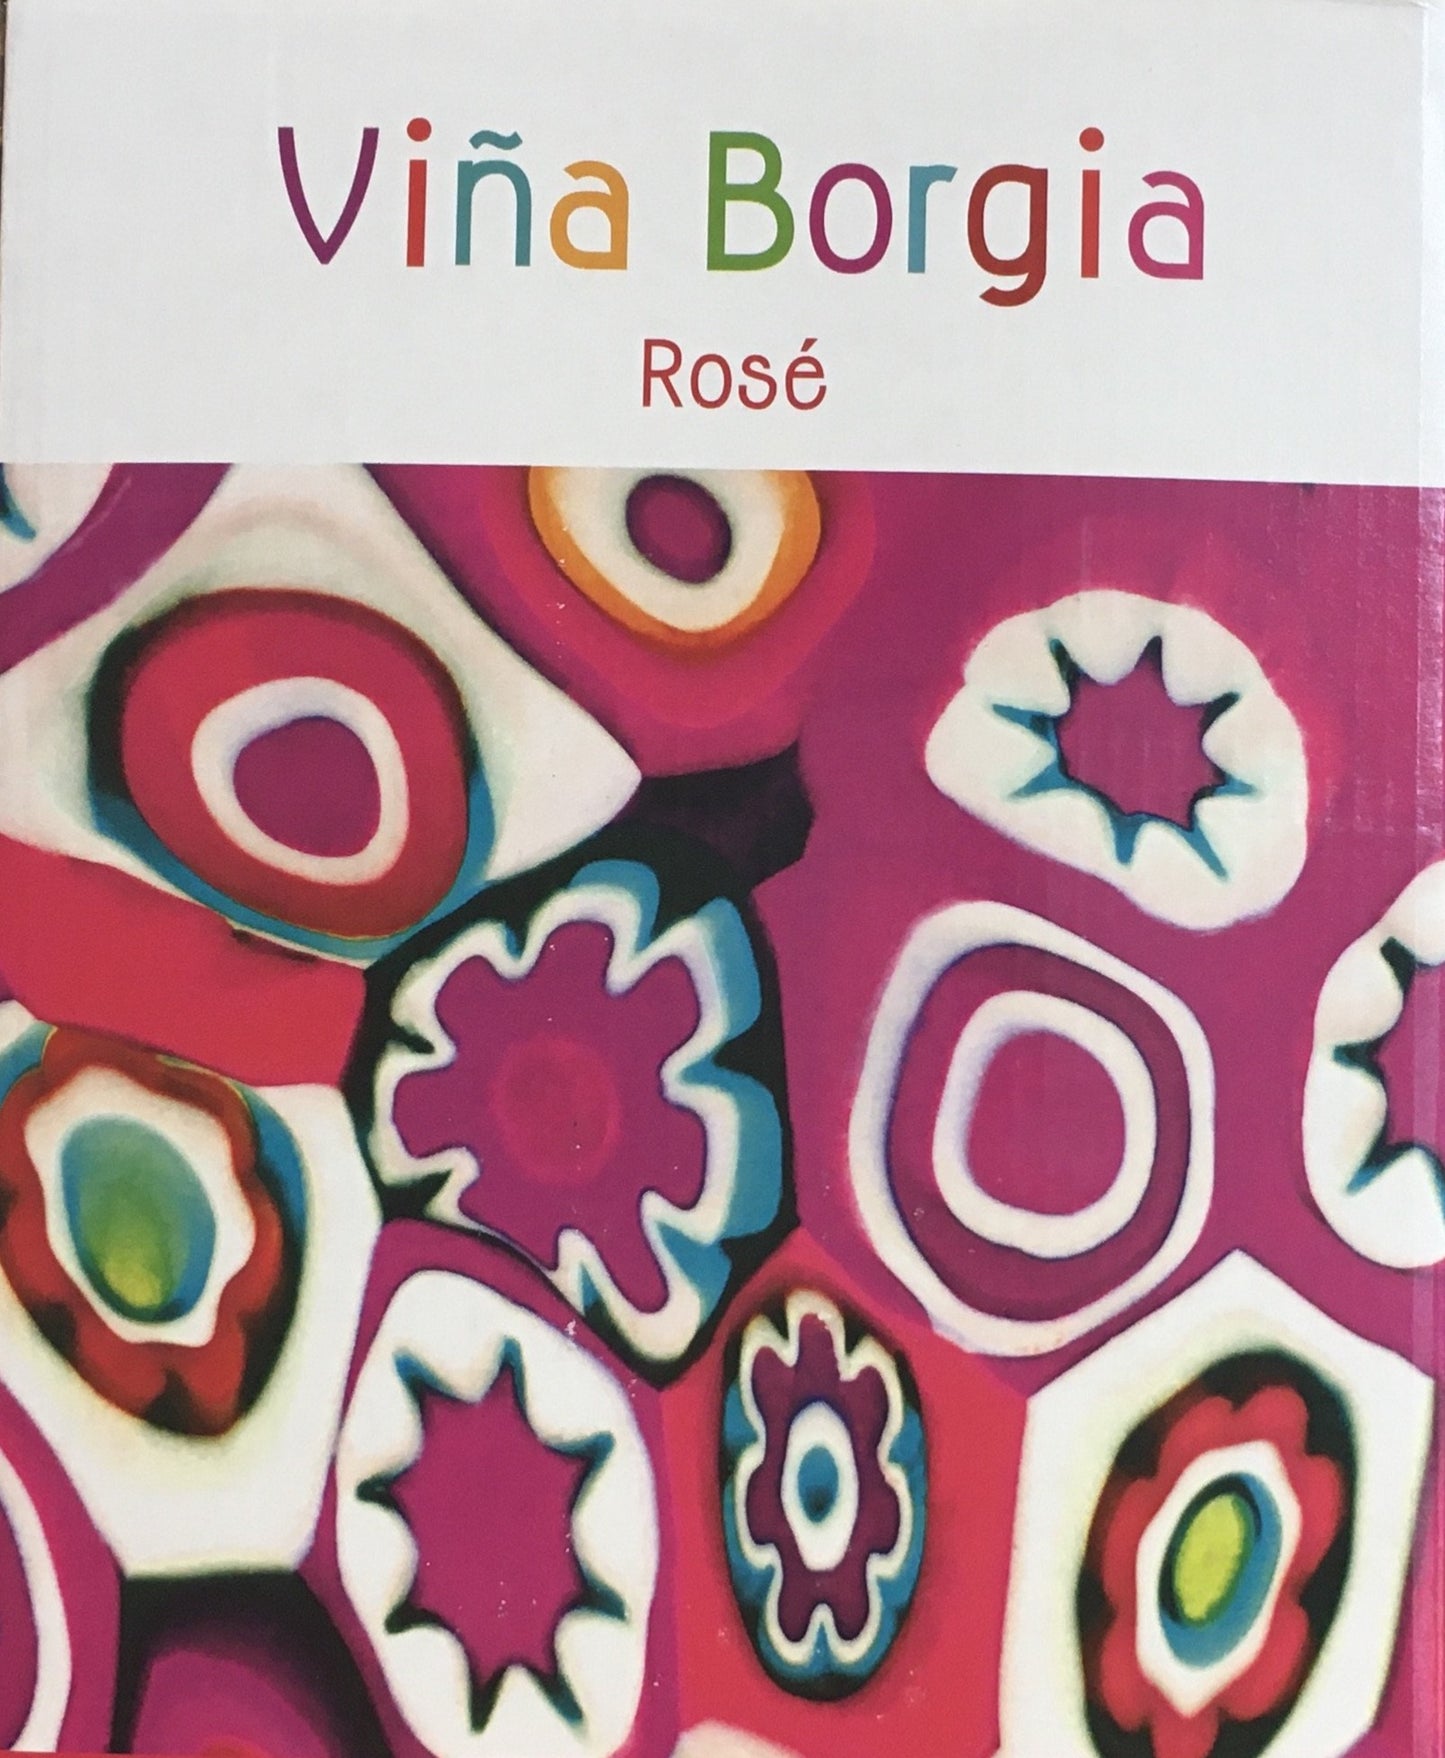 Vina Borgia Rose - 3L BiB